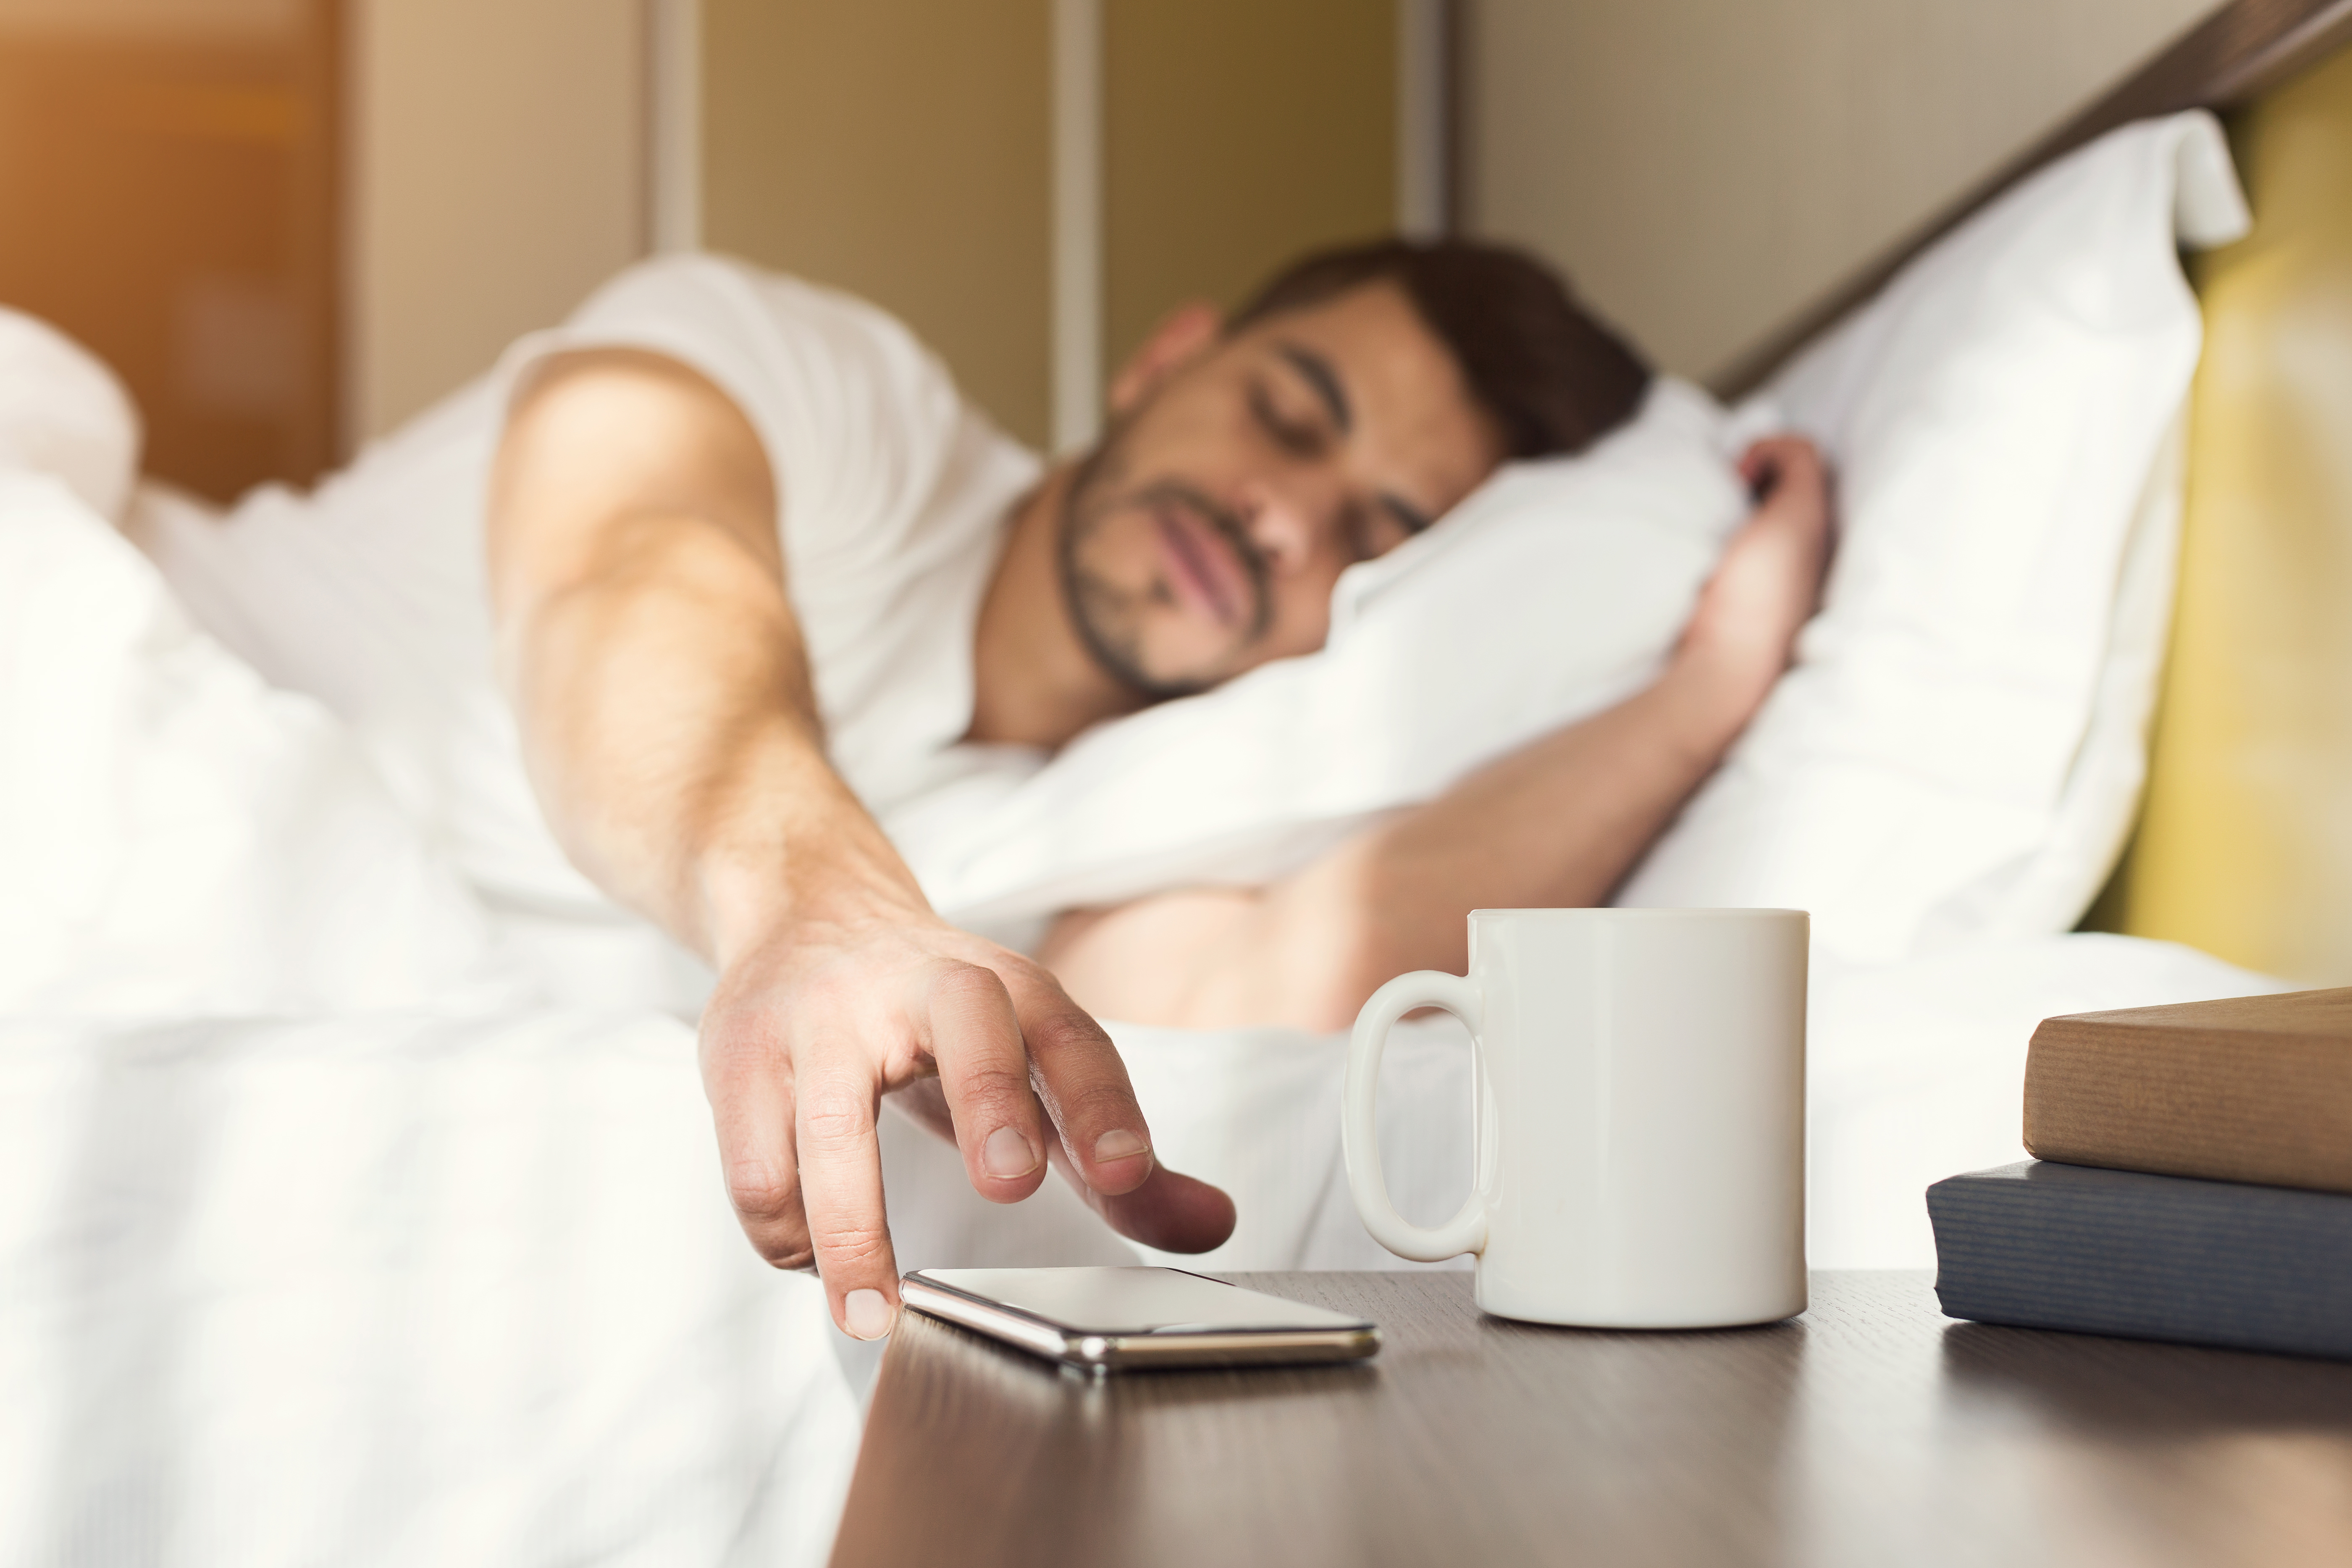 Chico somnoliento que se despierta temprano tras oír la señal del despertador en el smartphone. | Fuente: Shutterstock